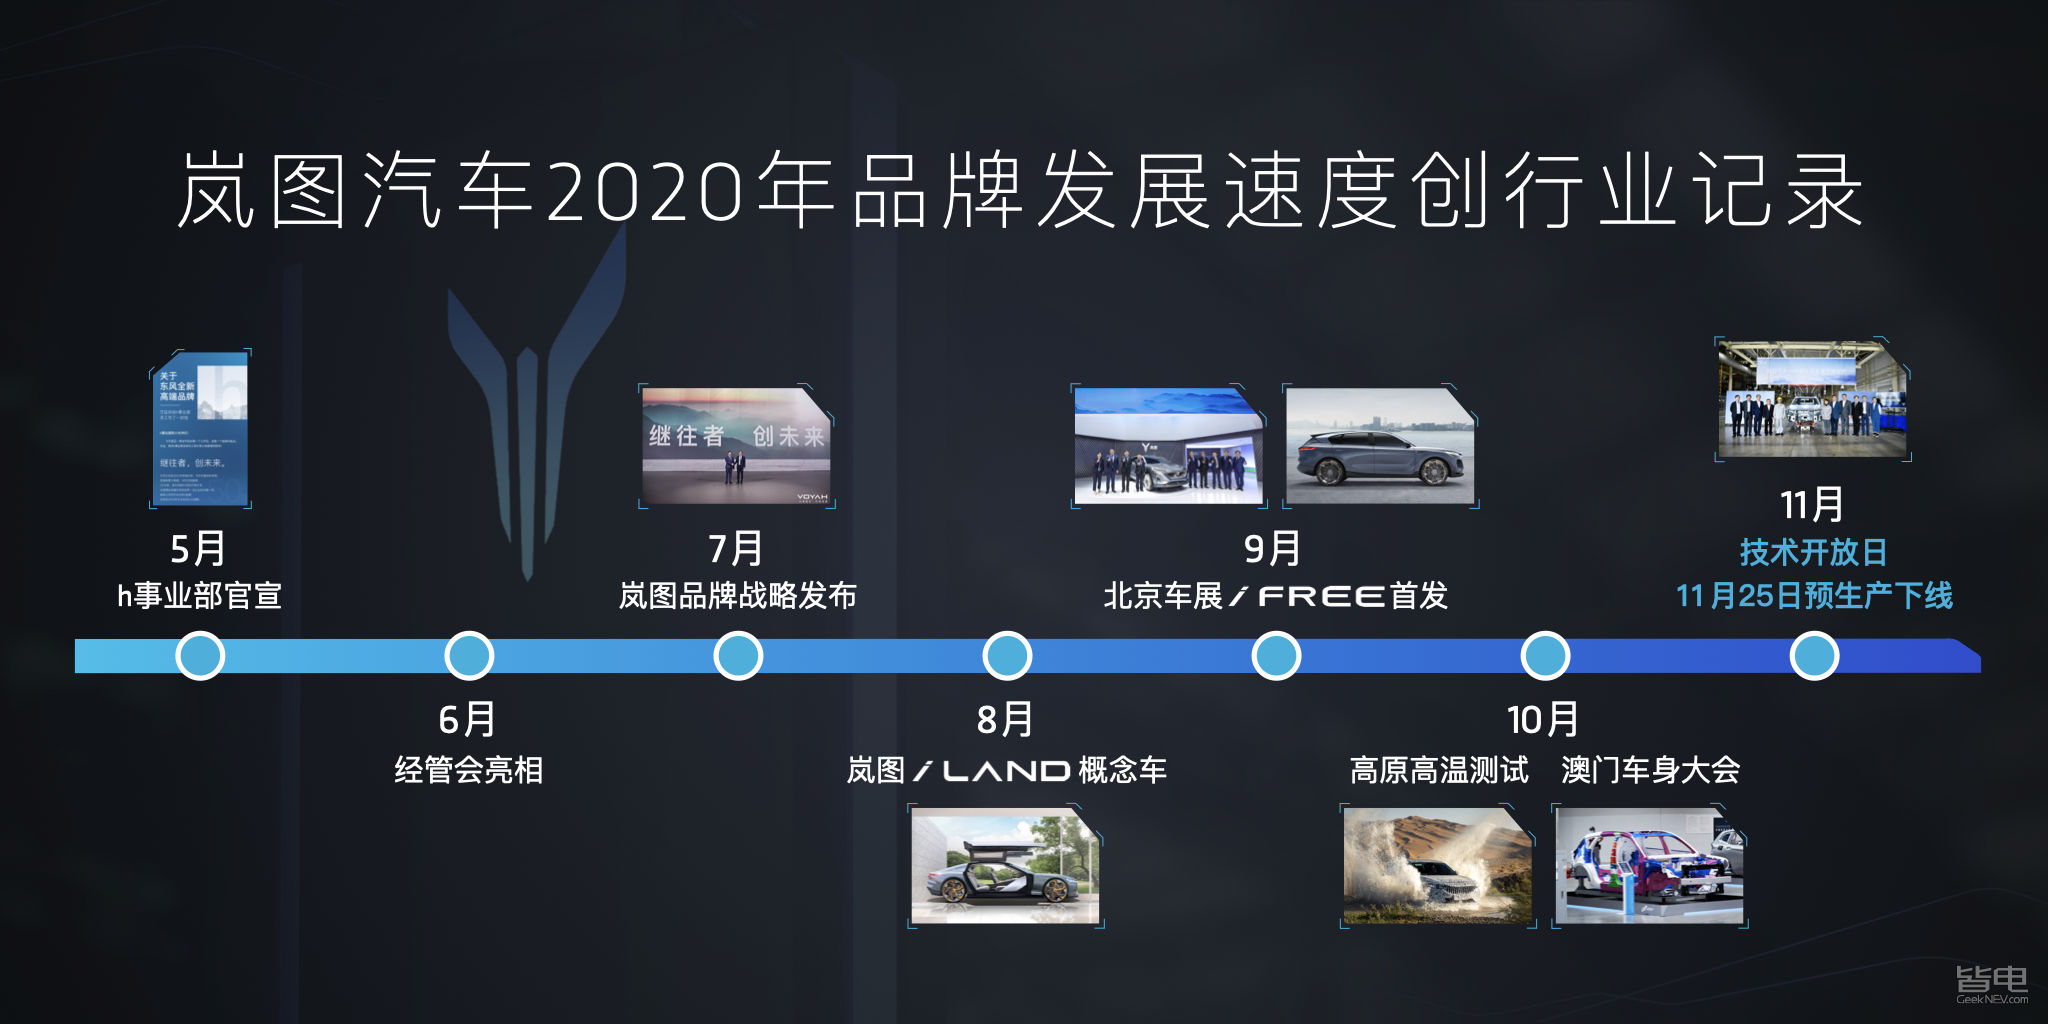 2020年快步走的岚图 从5月份东风汽车宣布成立h事业部,到7月份岚图